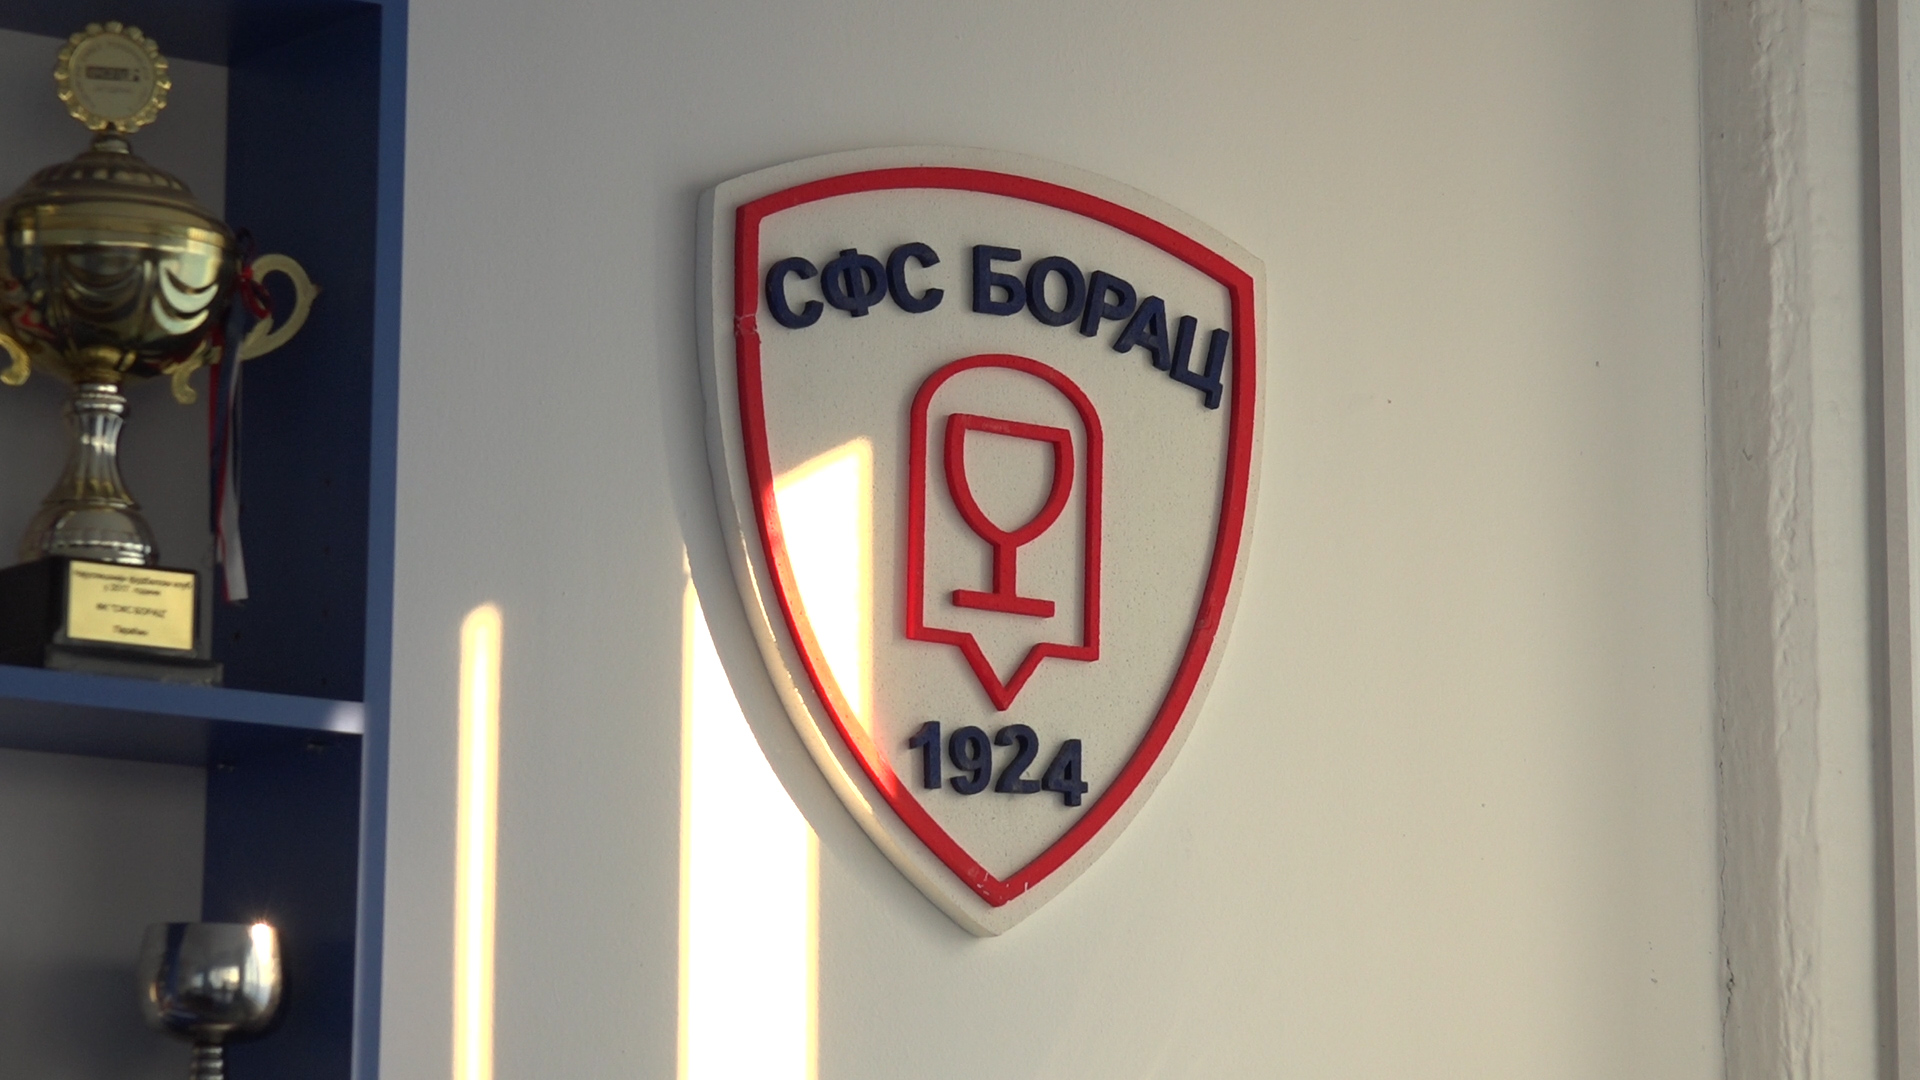 Fudbalski klub SFS Borac ove godine obeležava 100 godina postojanja